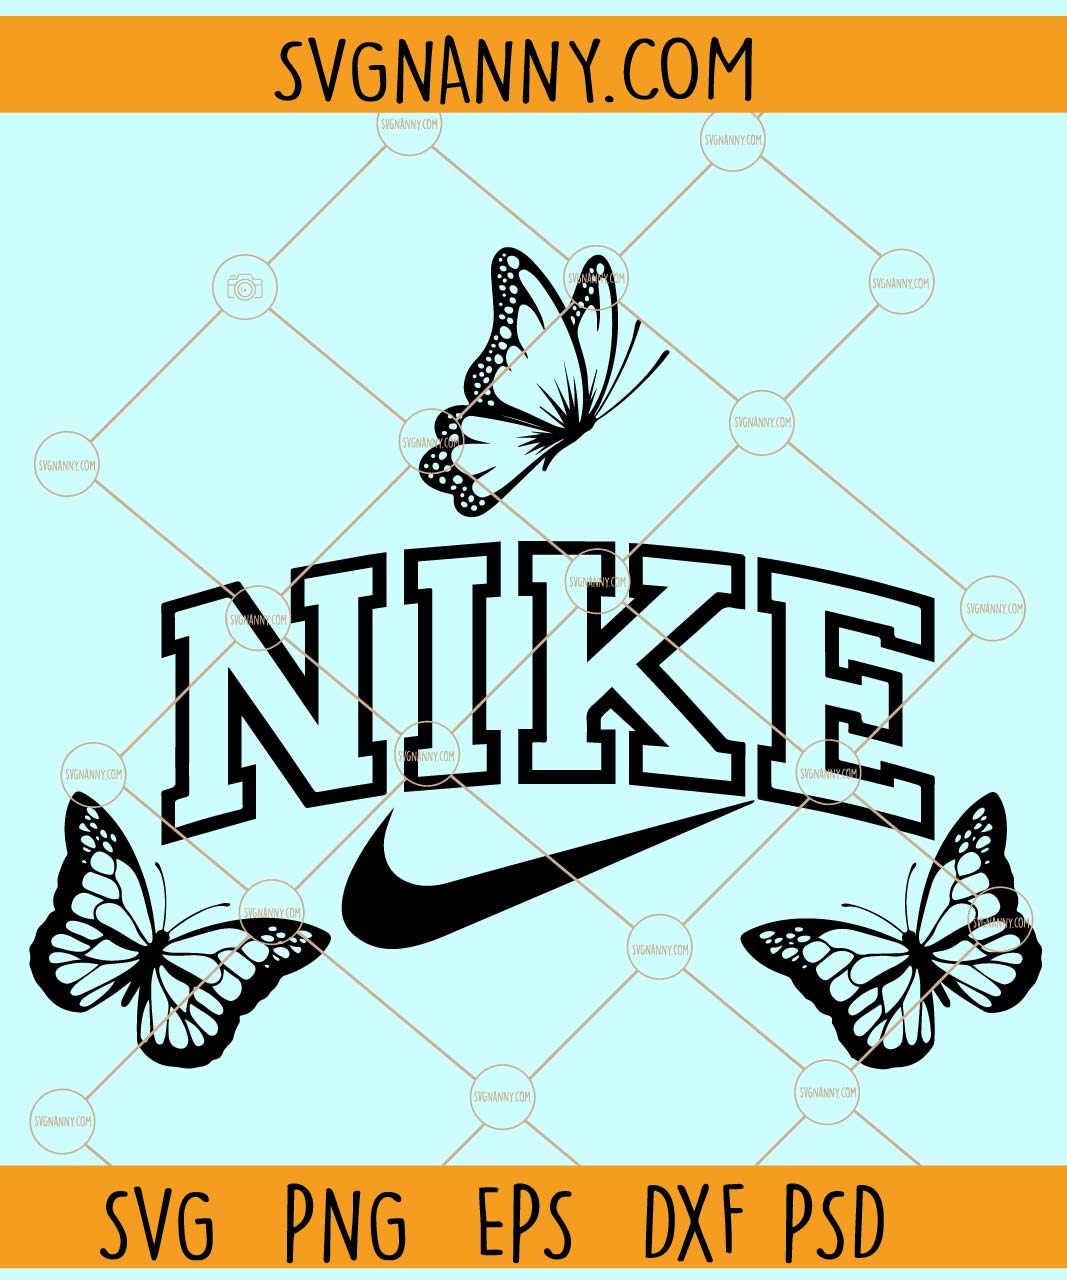 Nike SVG, Nike Drip SVG, Nike Logo Vector, Nike Logo Svg, Nike PngPNG